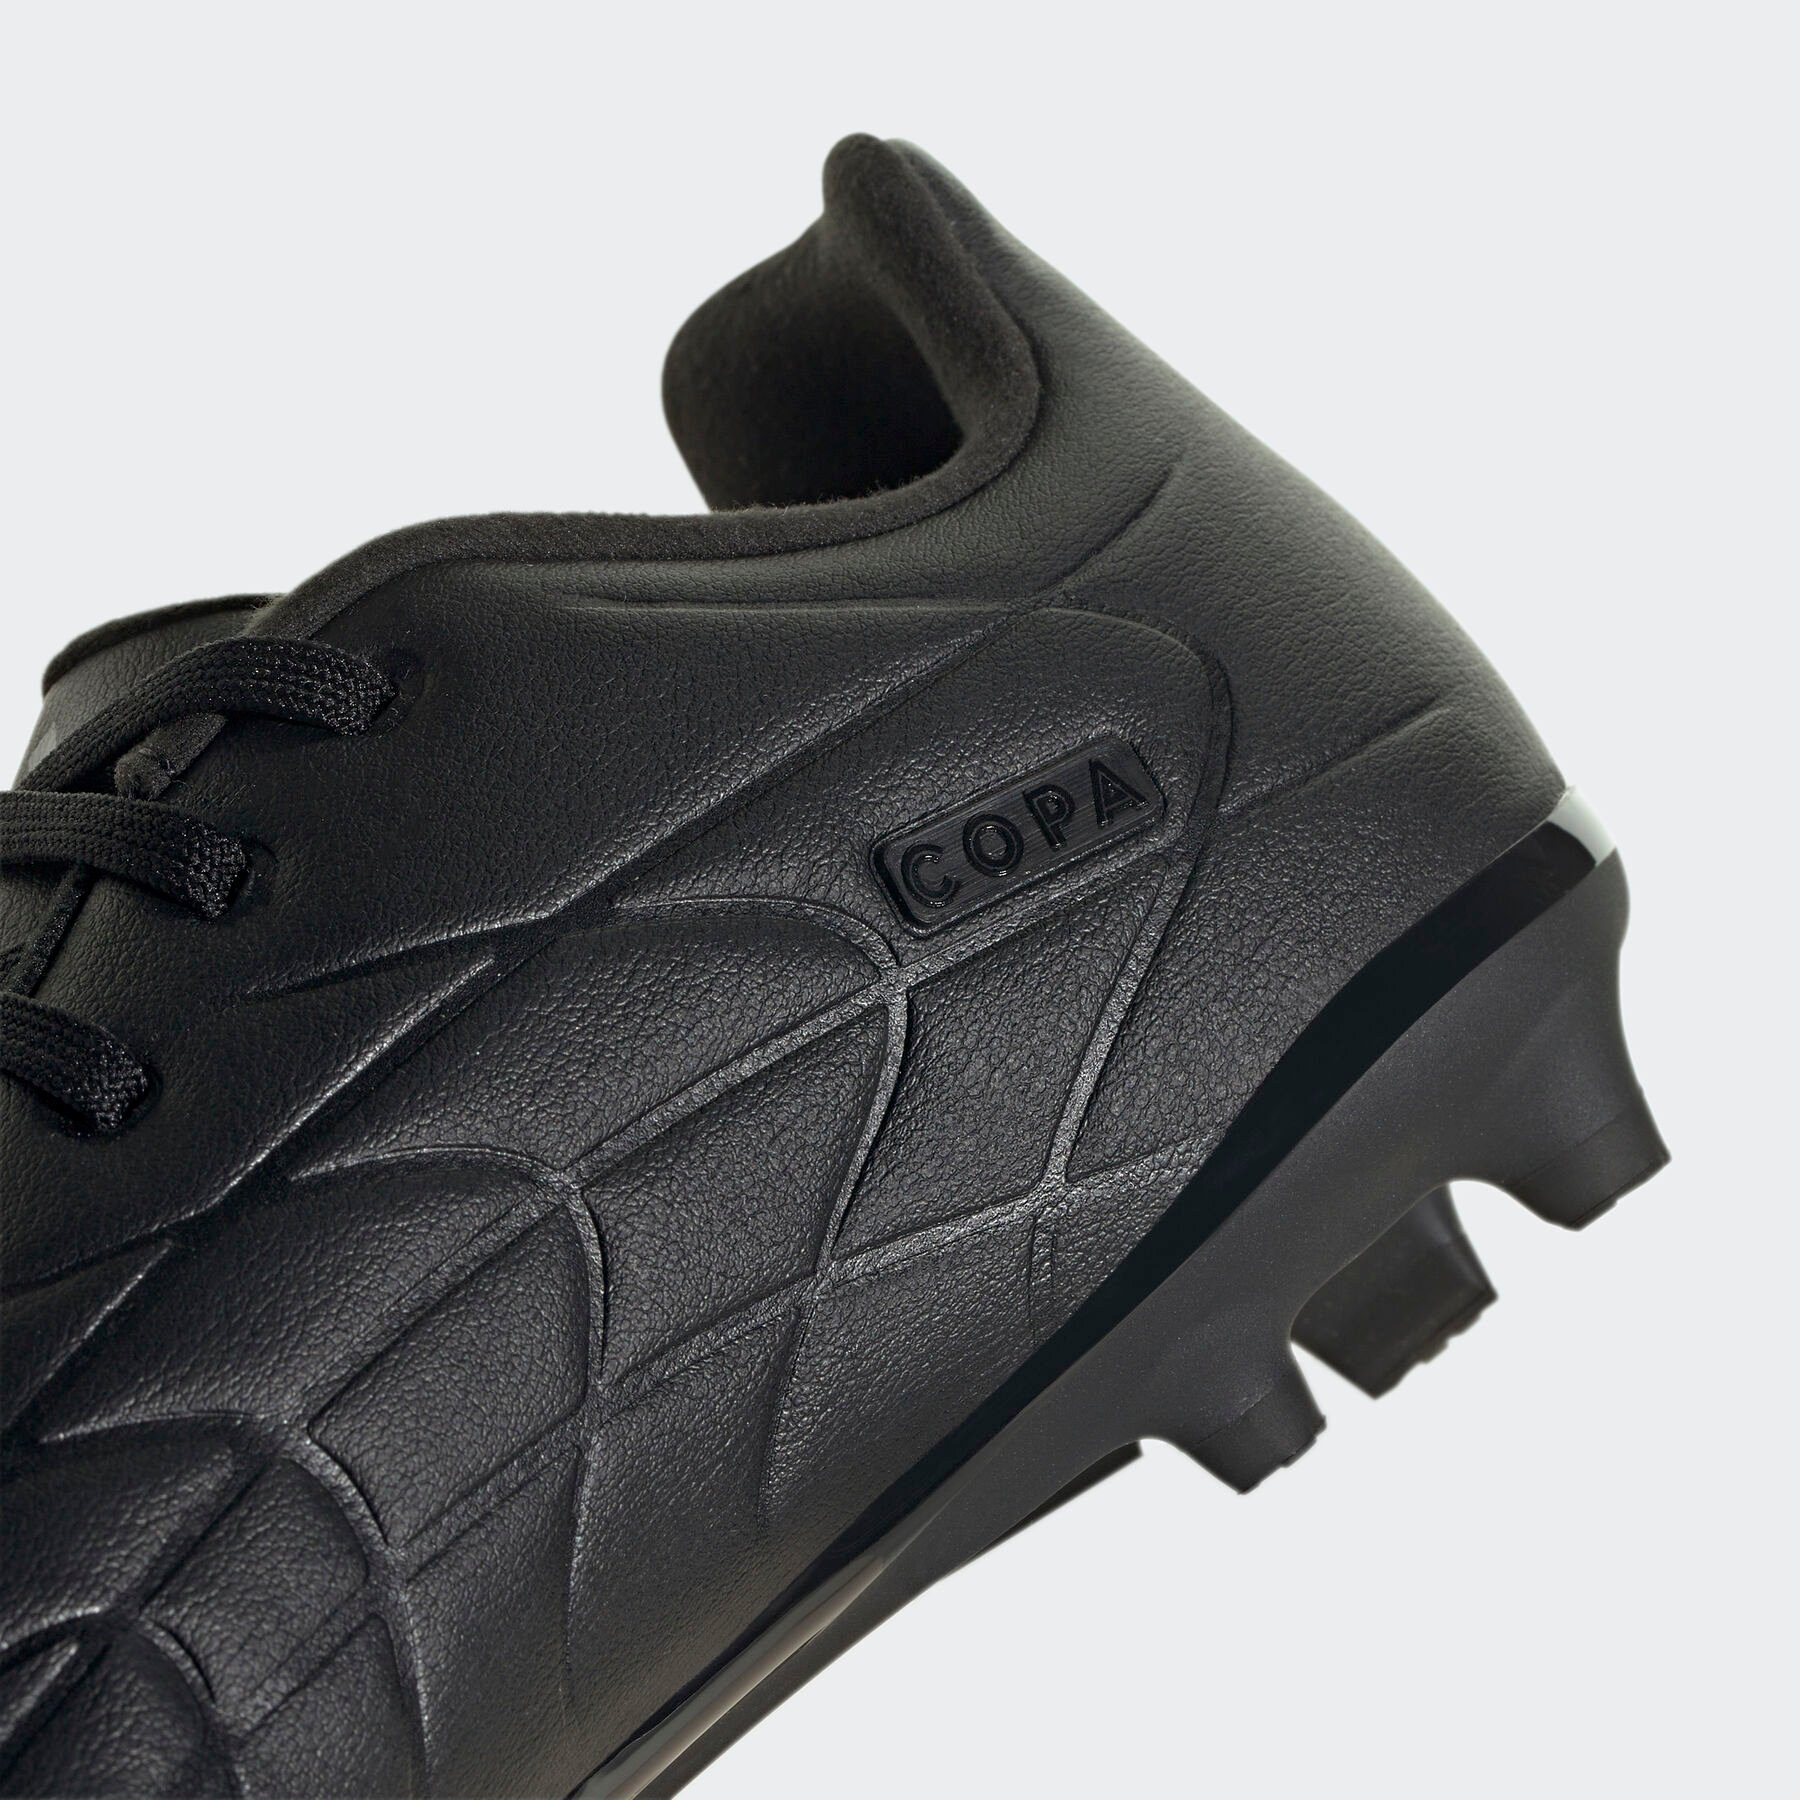 Core Core Black Fußballschuh COPA / Performance PURE.3 / FG Core adidas Black Black